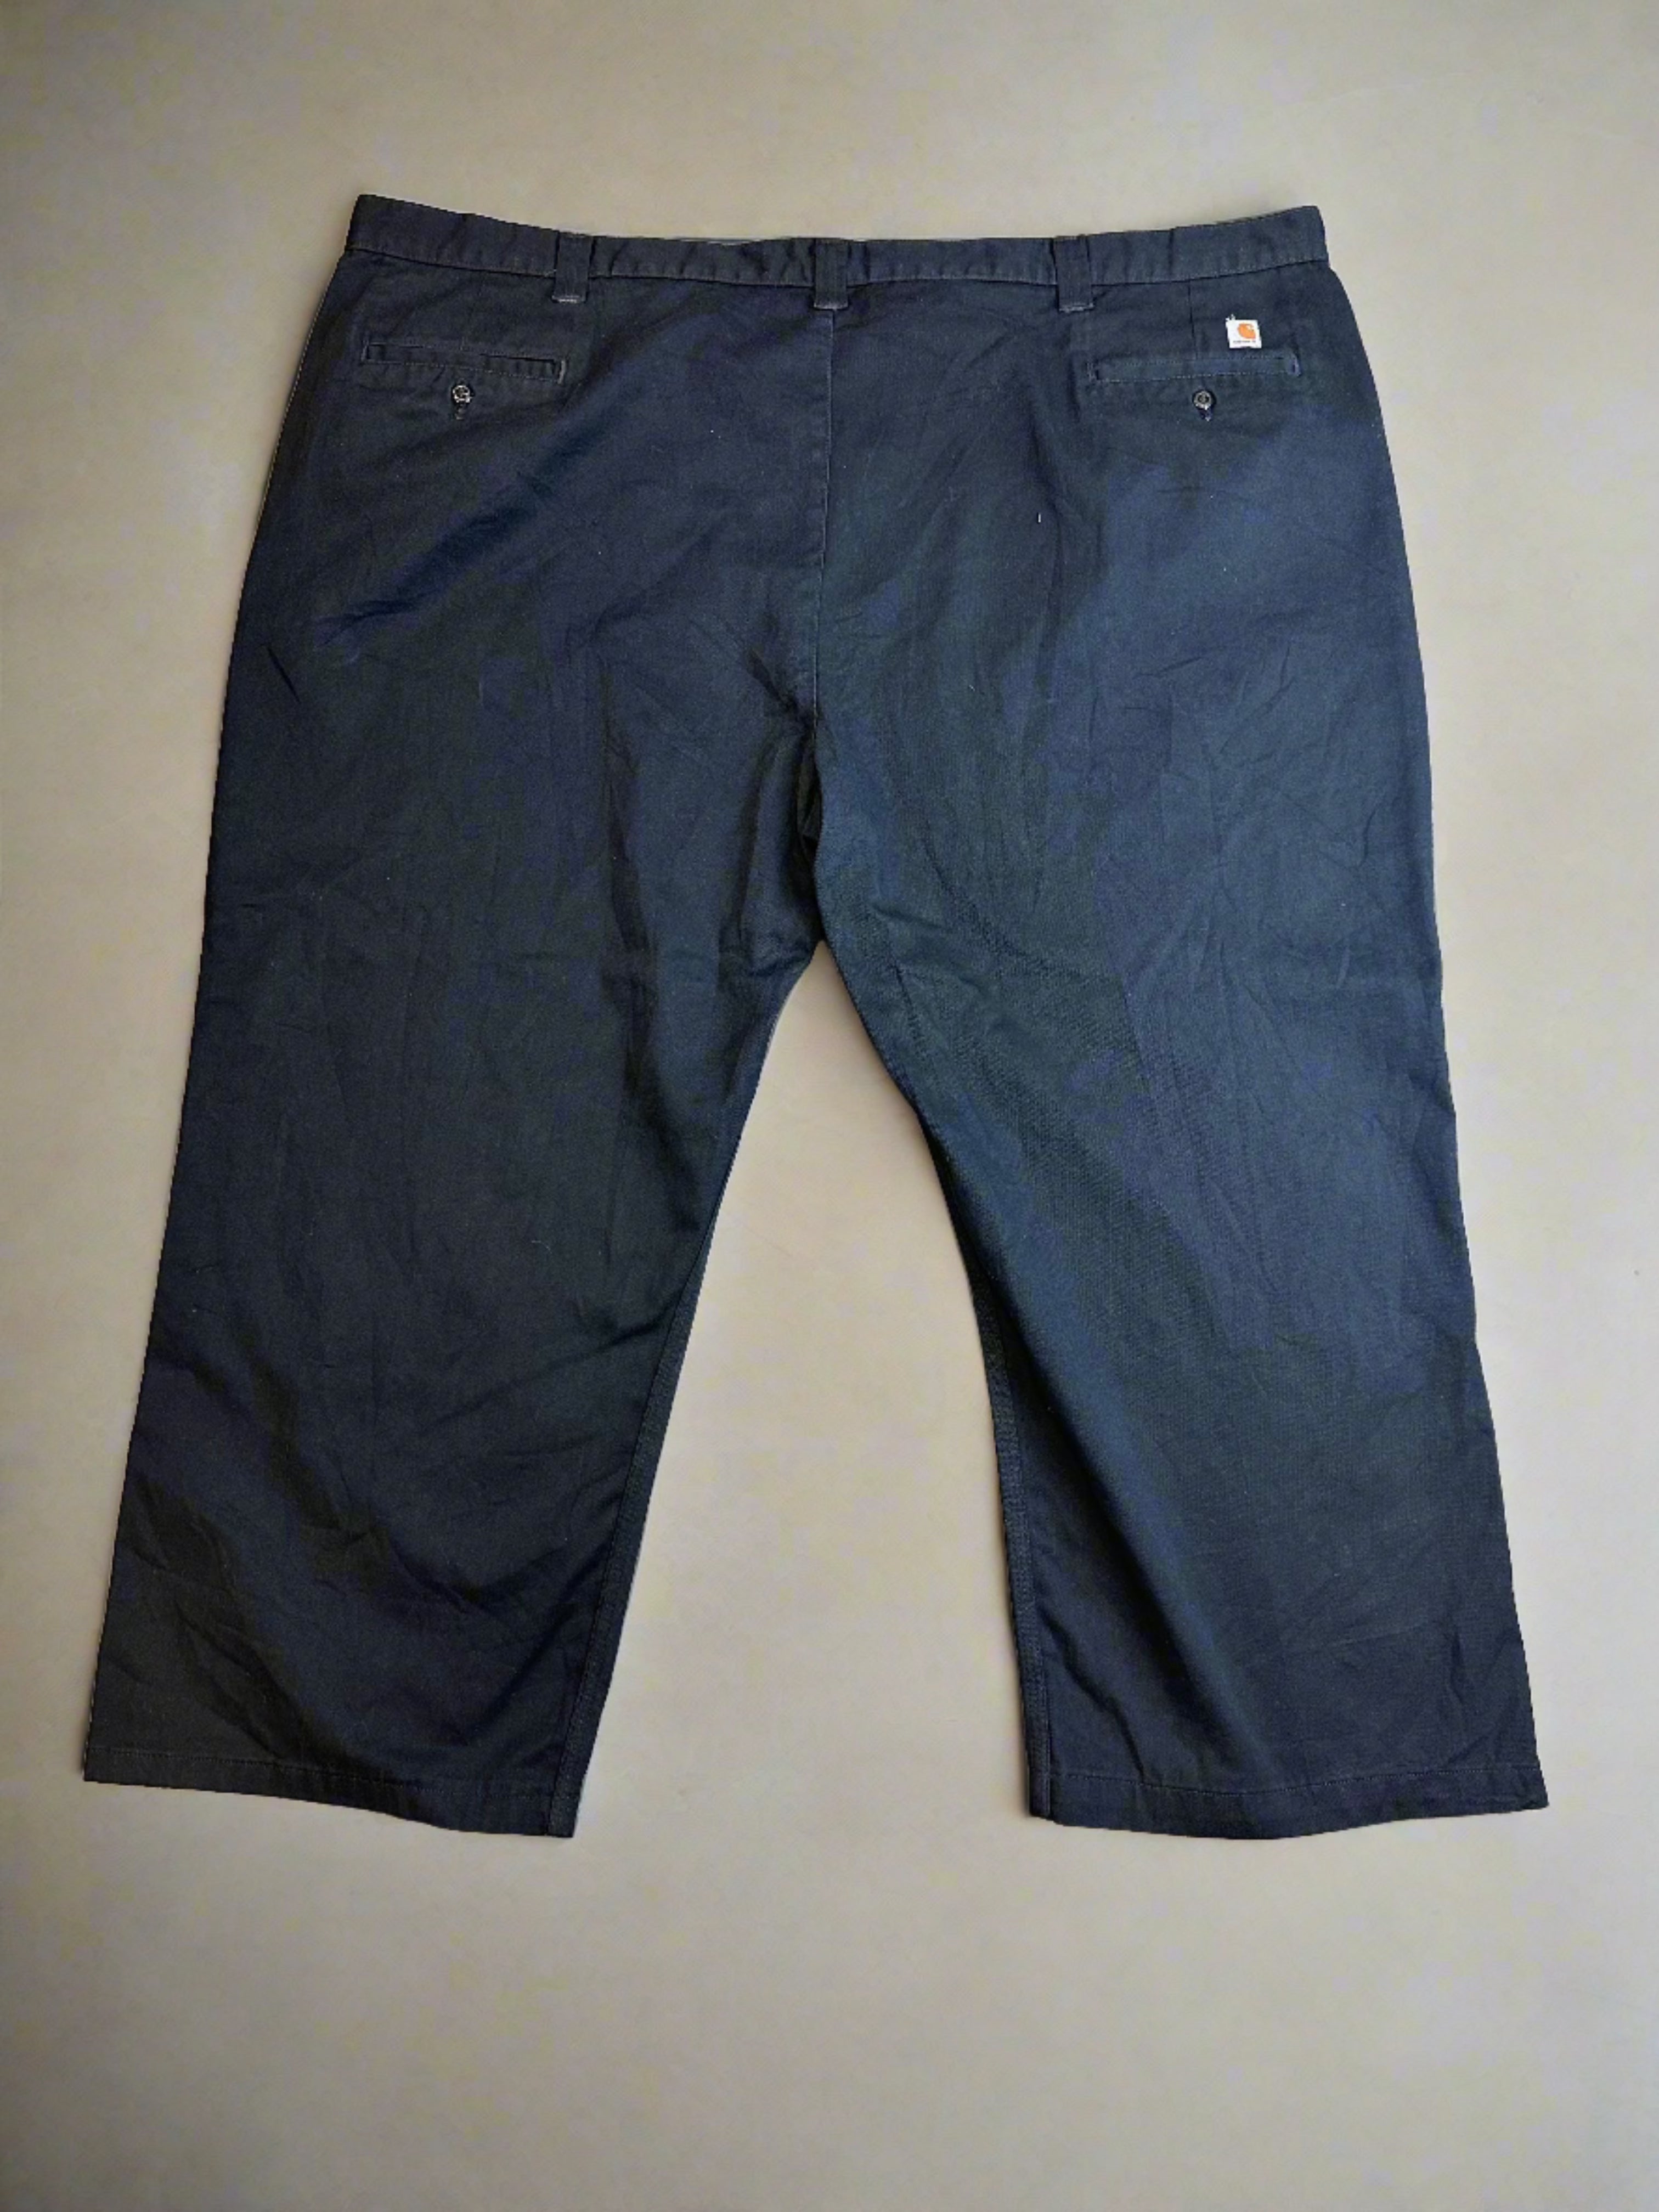 Vintage Carhartt Pants - size 54x32